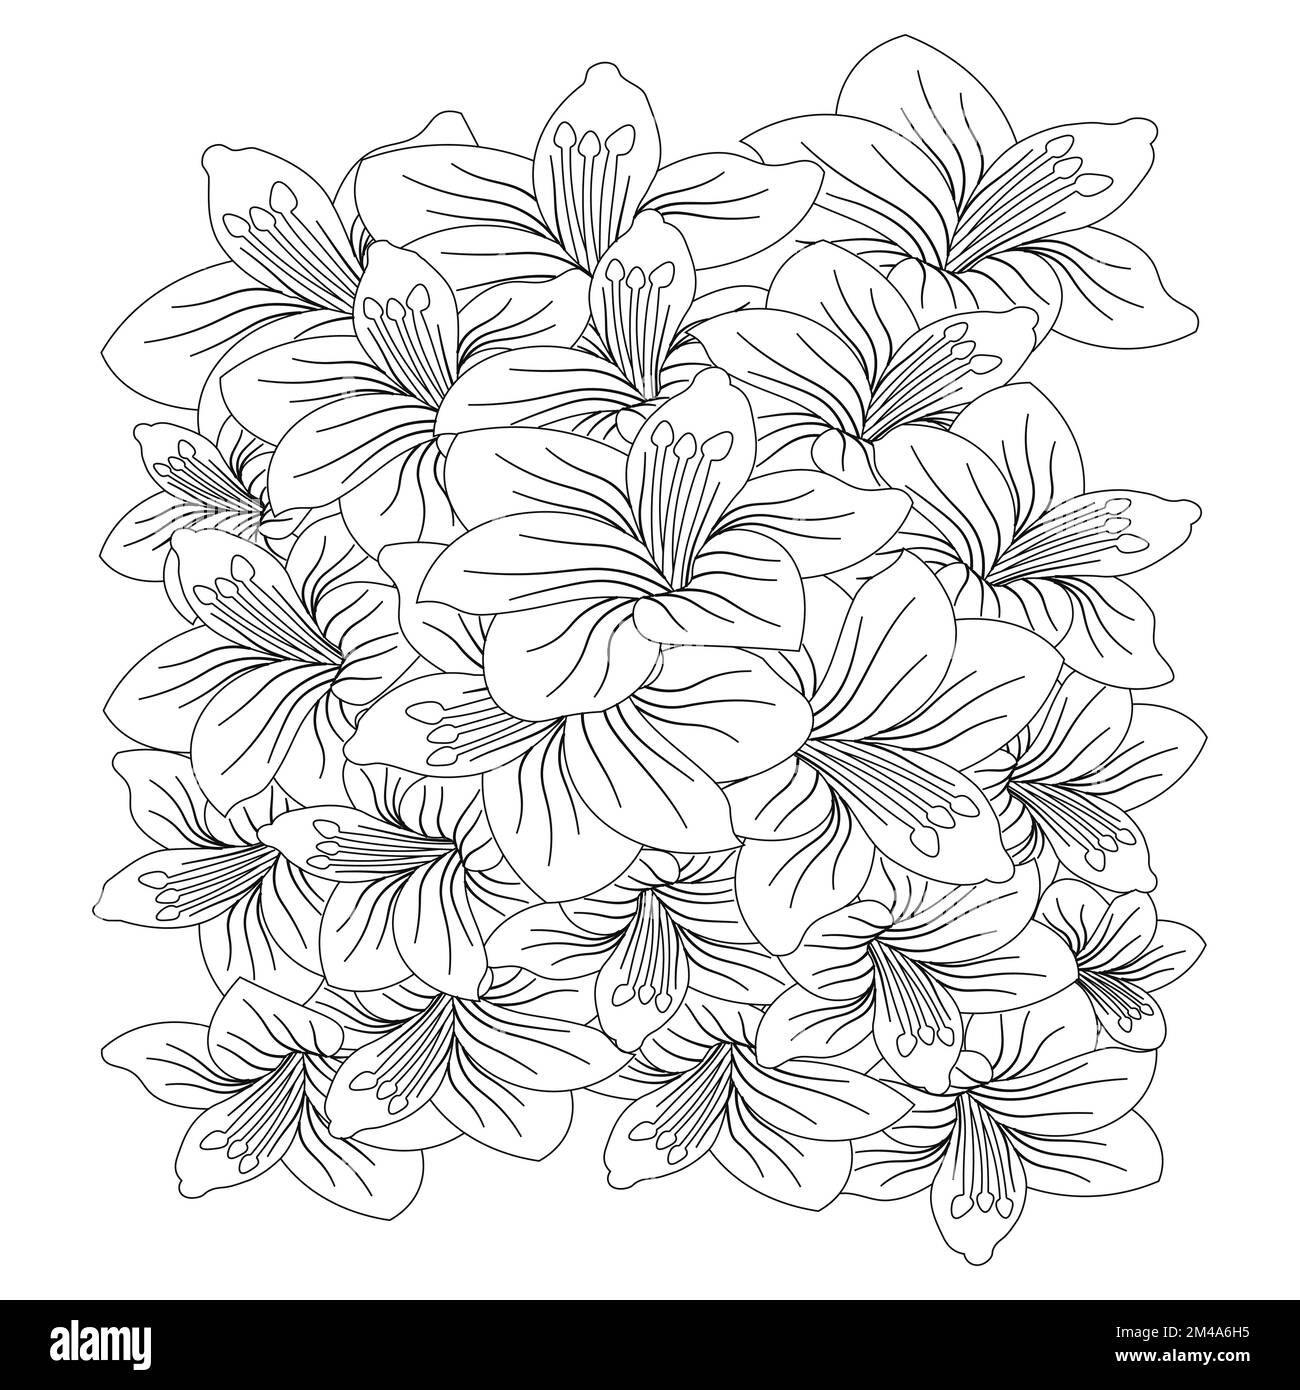 Wunderschöne Blumen Malseite mit Bleistiftskizze, detailliert in Vektorgrafik von Strichgrafiken Stock Vektor